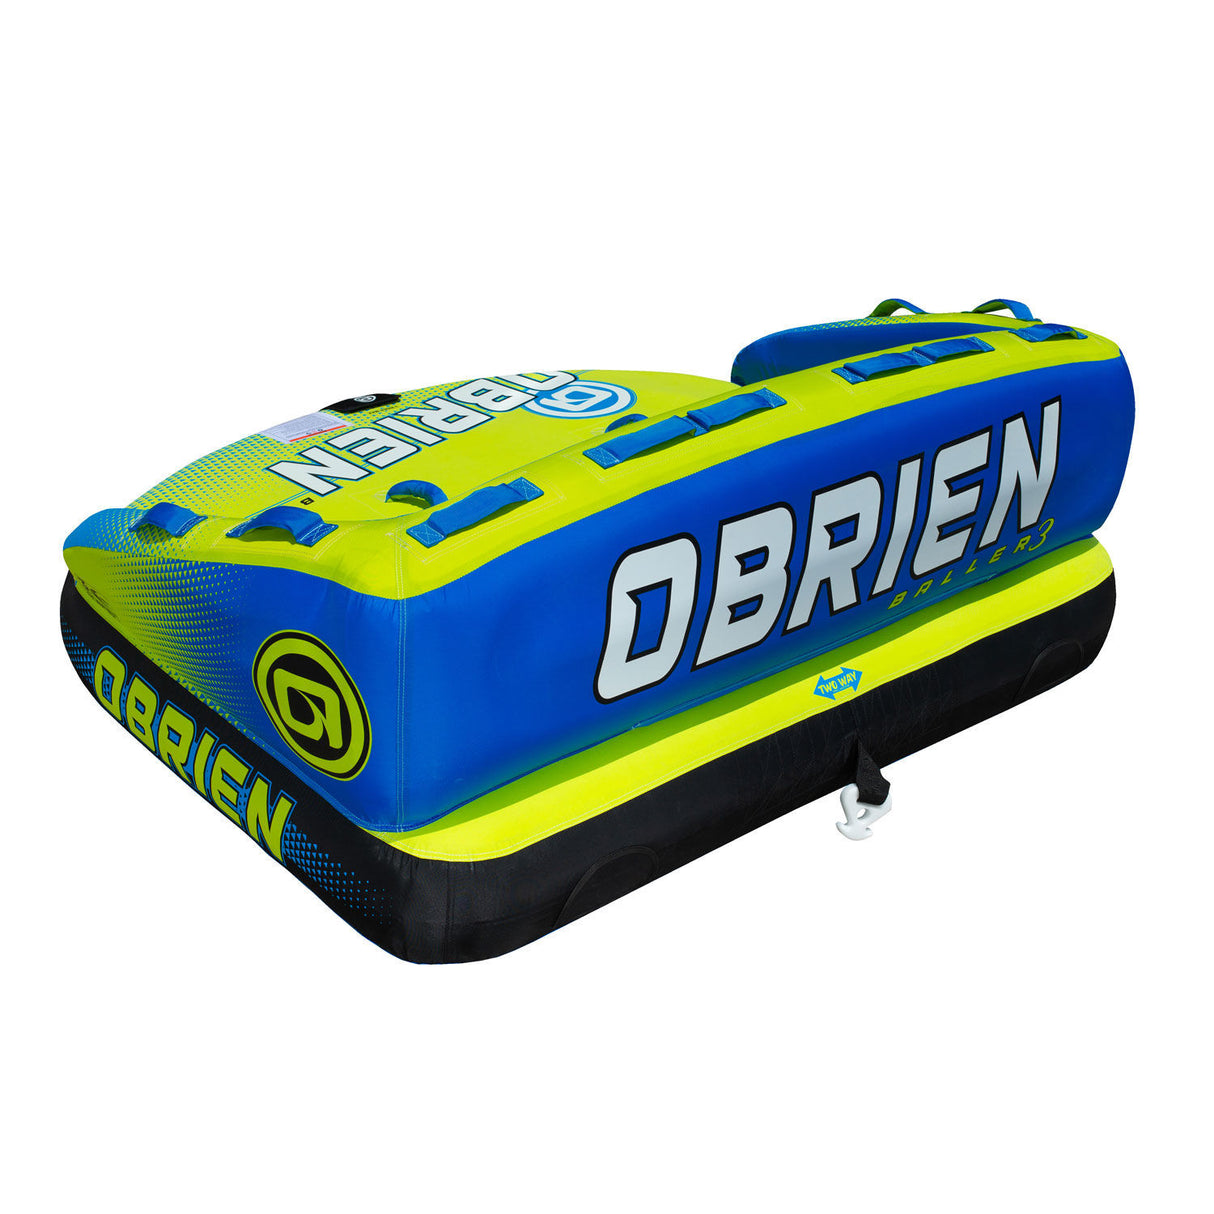 O'Brien Baller Soft Top 3-Rider Towable Tube